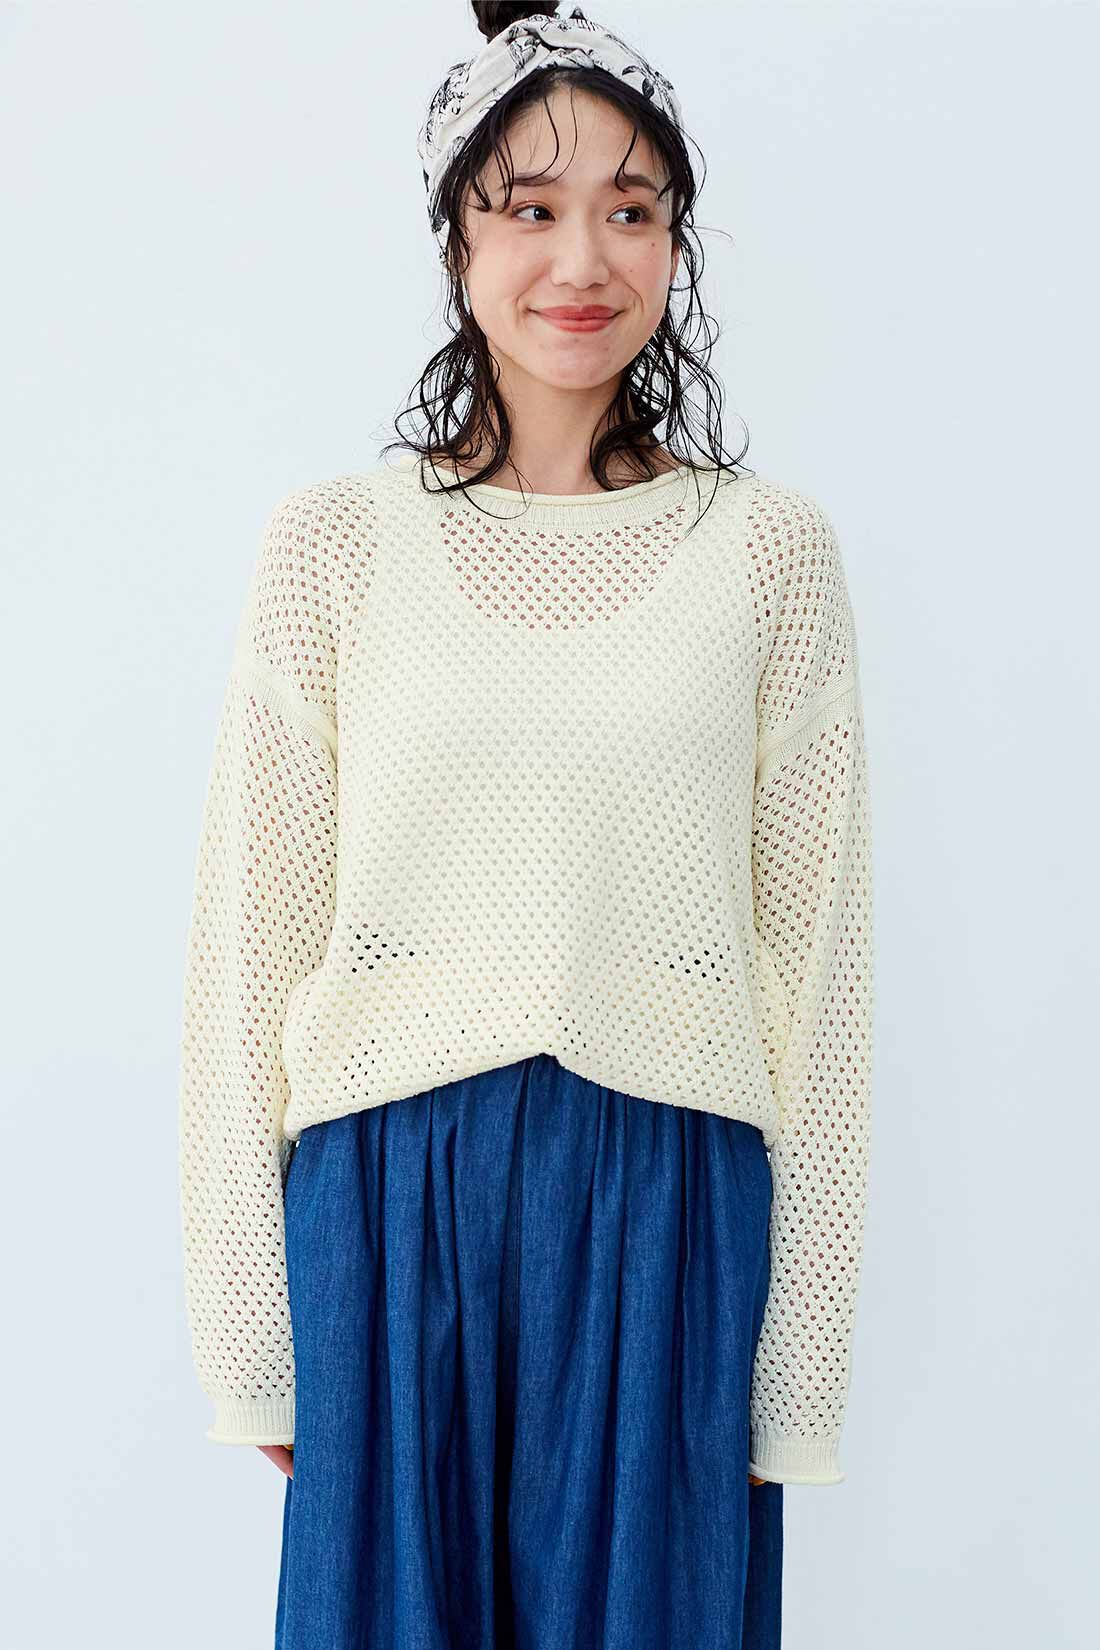 ハンドメイド 透かし編み セーター 大きめサイズ